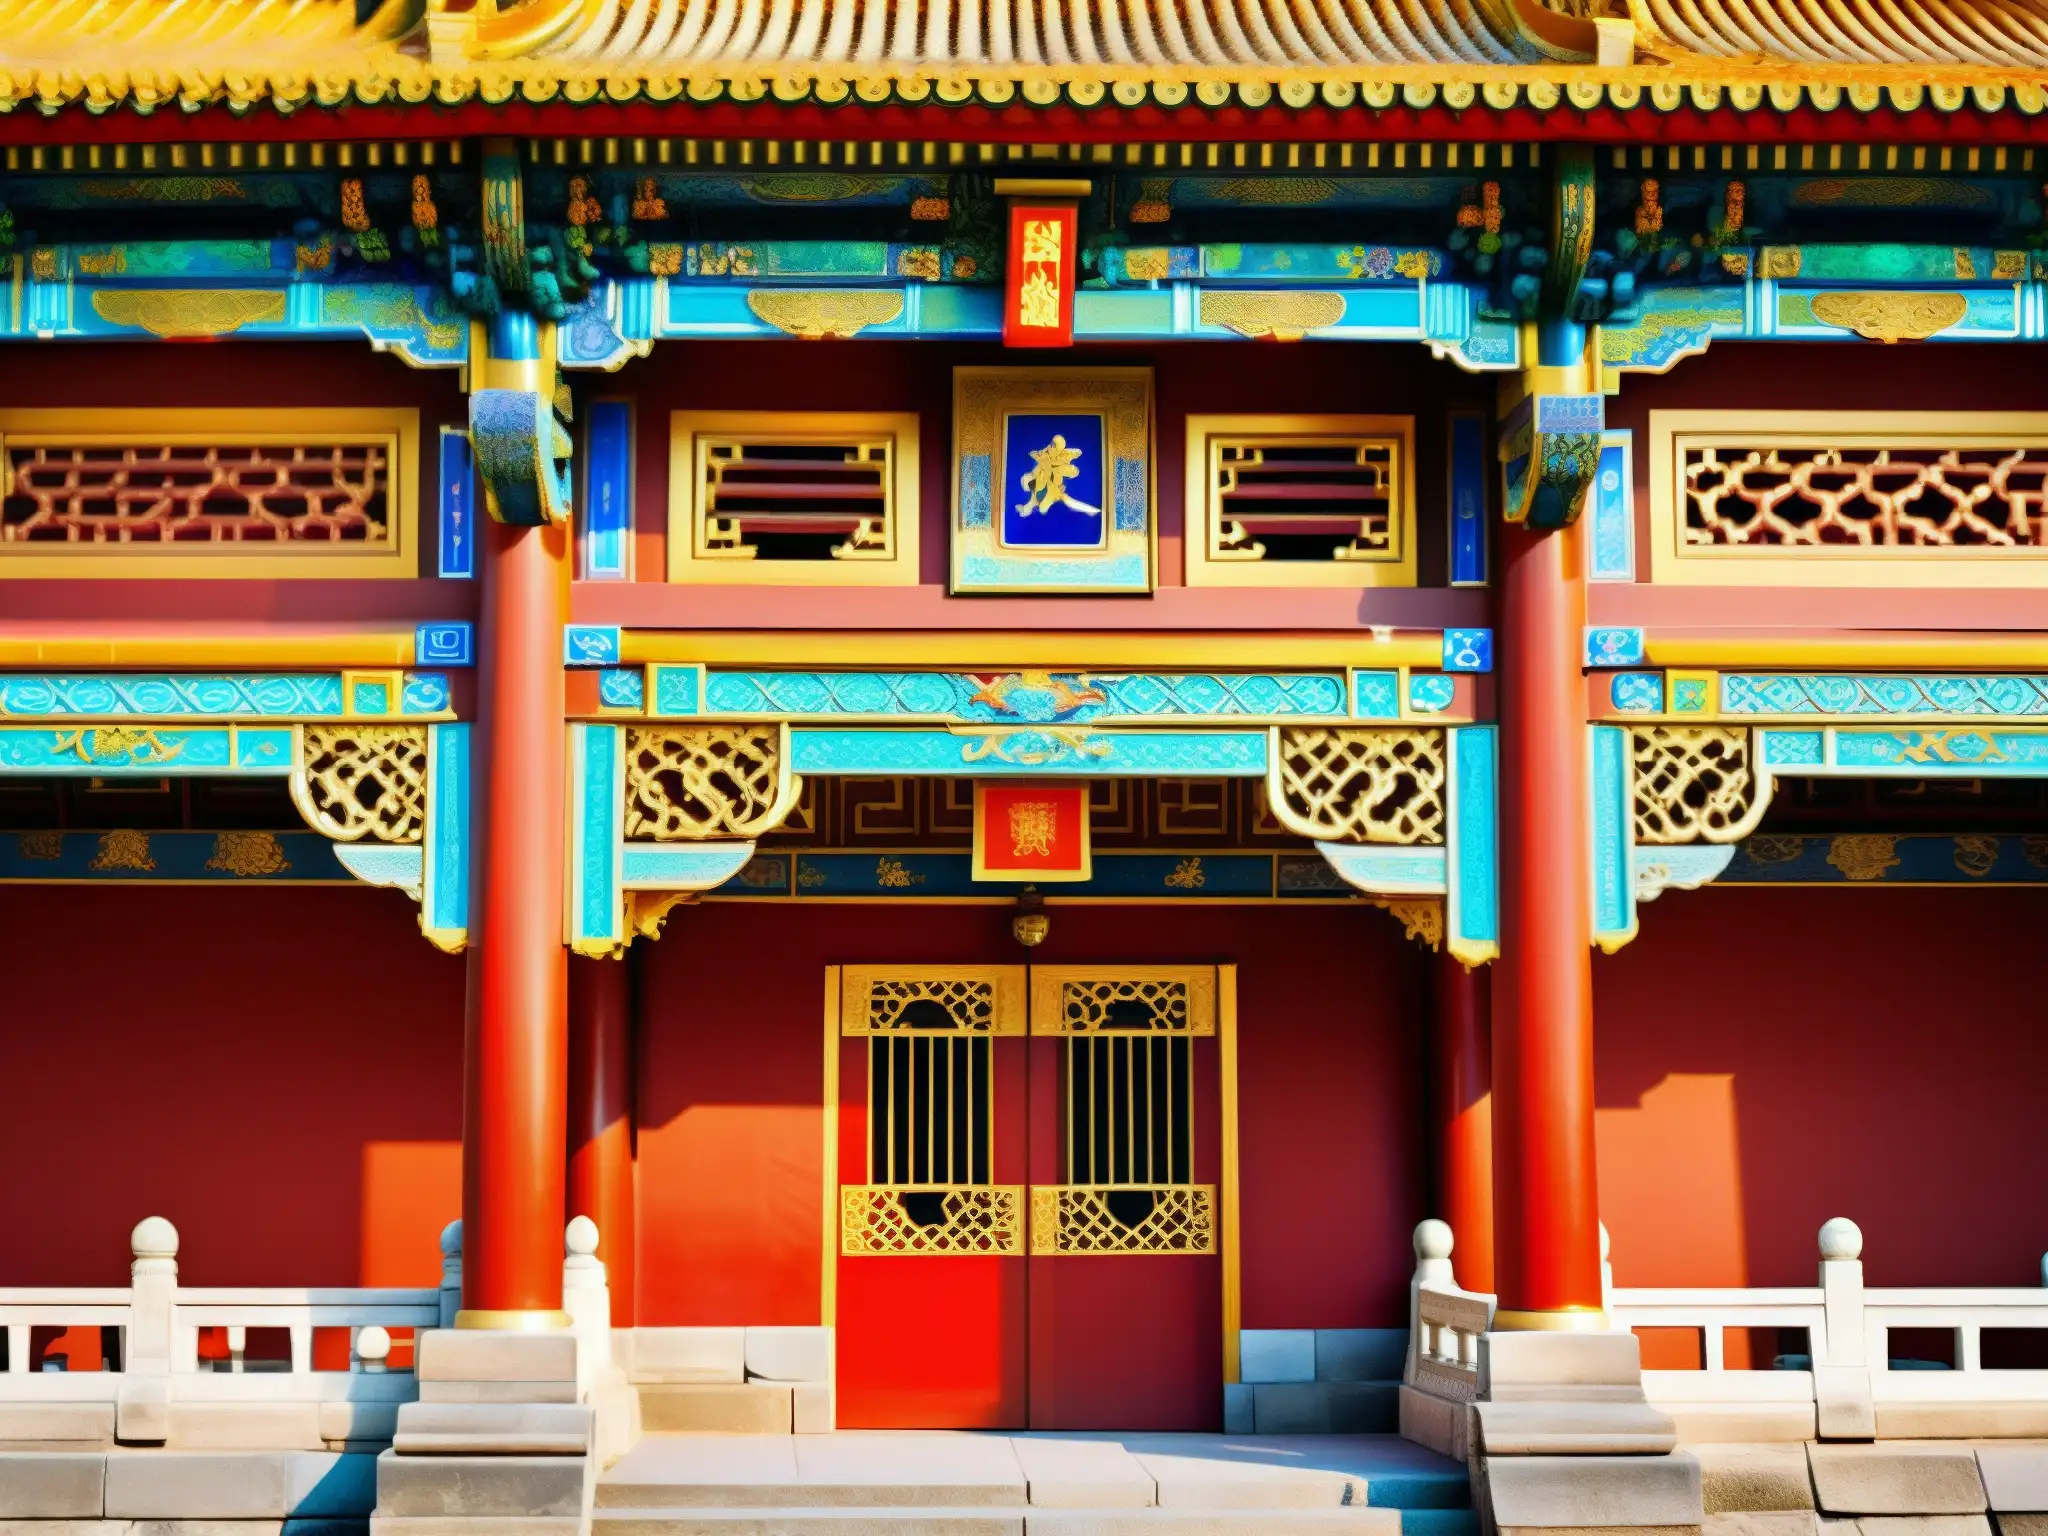 Vibrante arquitectura tradicional china en la Ciudad Prohibida, con detalles intrincados y colores vivos